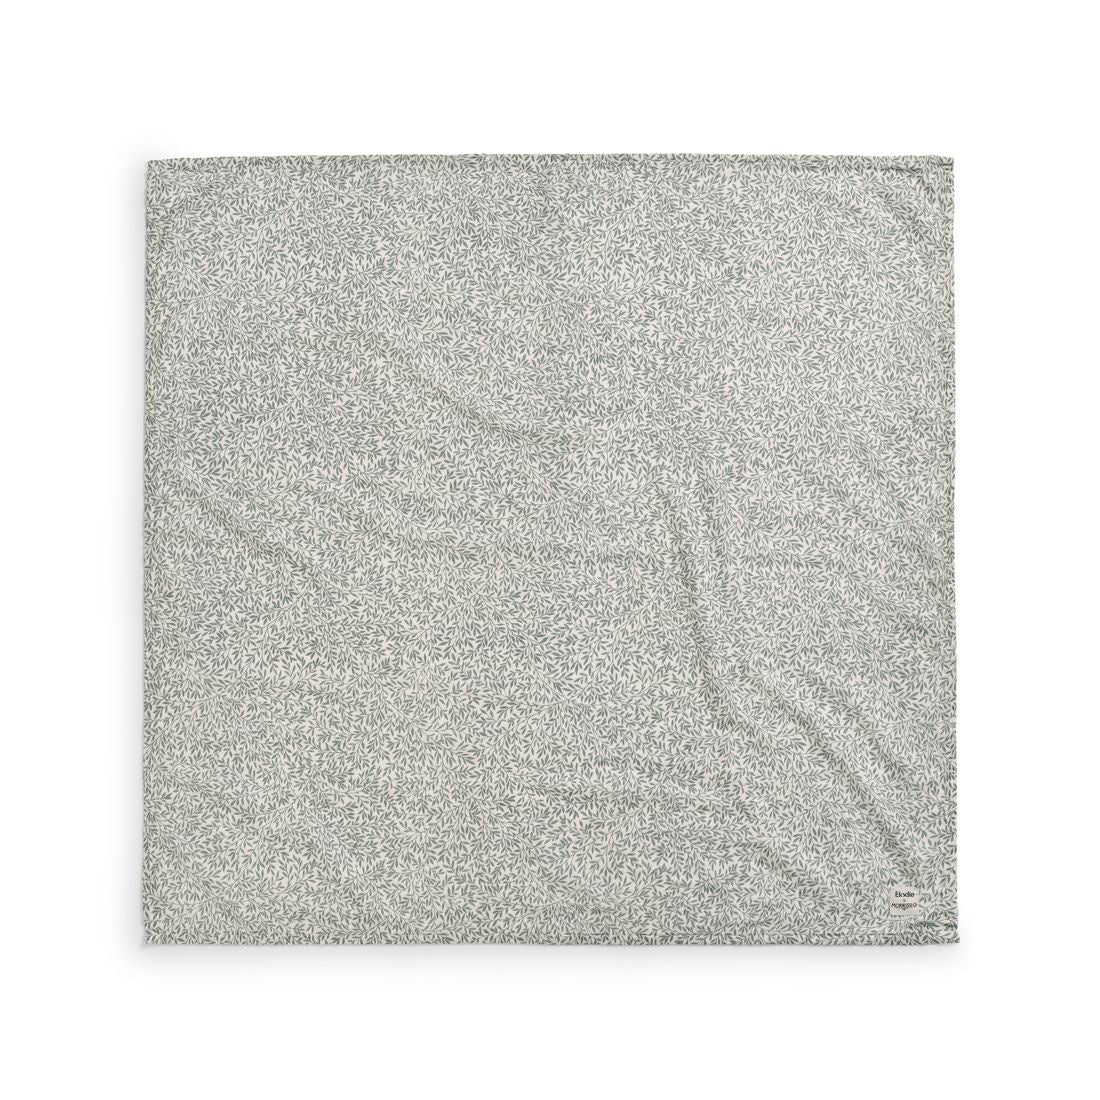 Elodie Details - Muslin cotton blanket - Standen